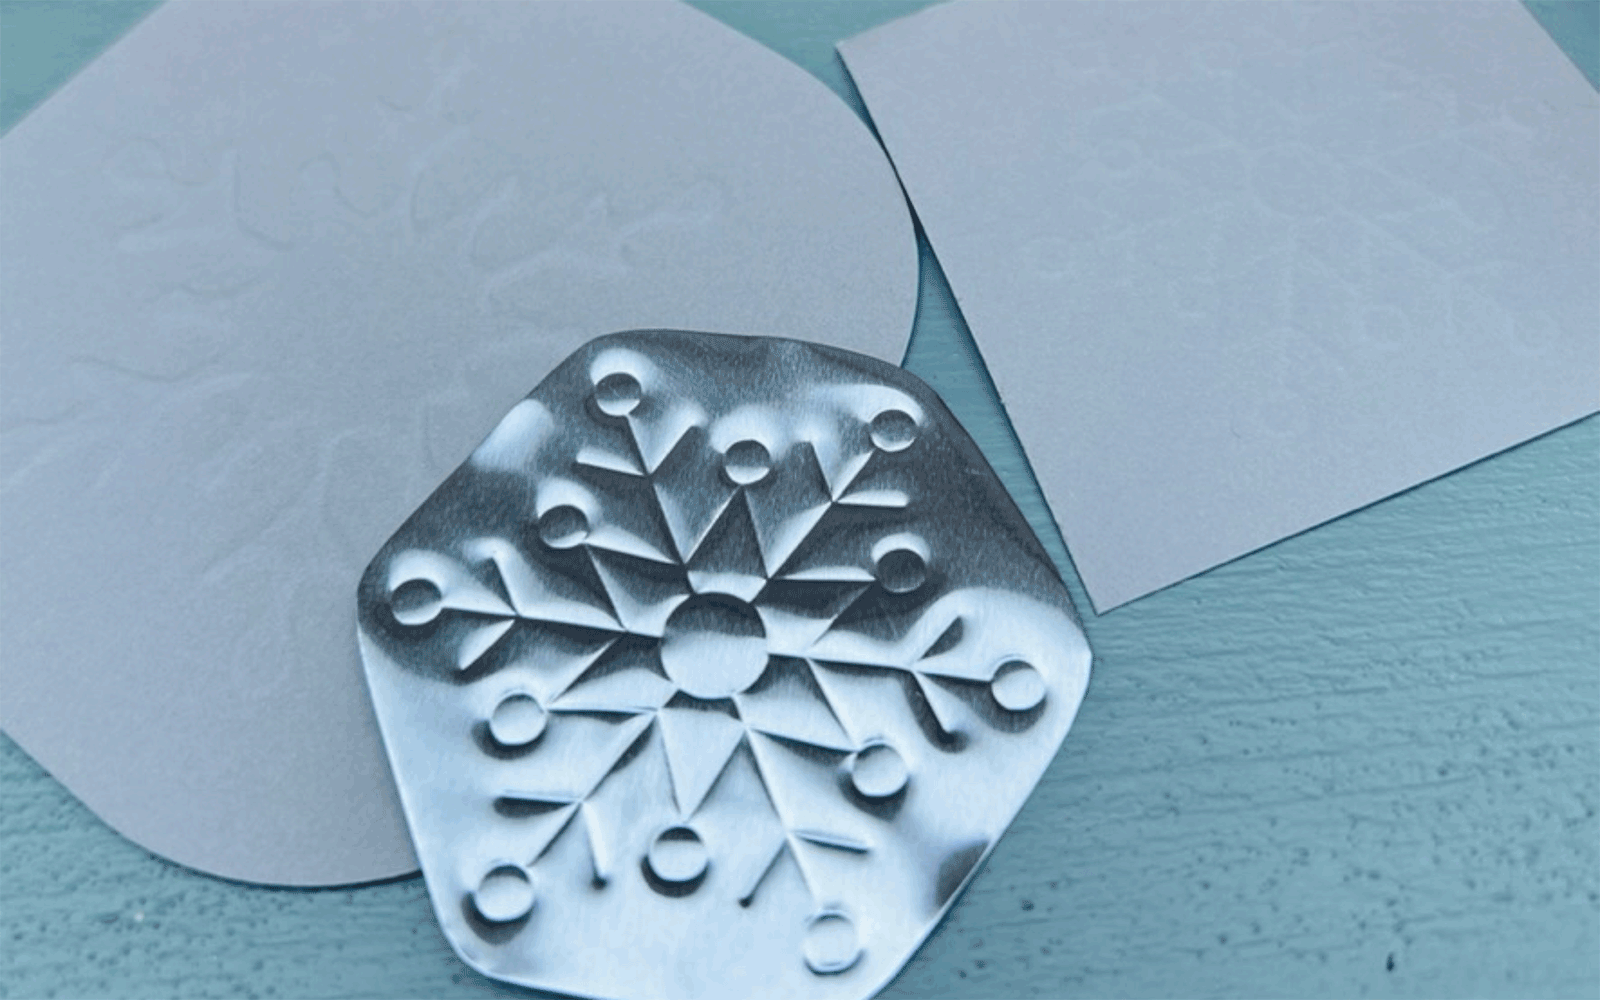 Snowflake embossed on thin metal